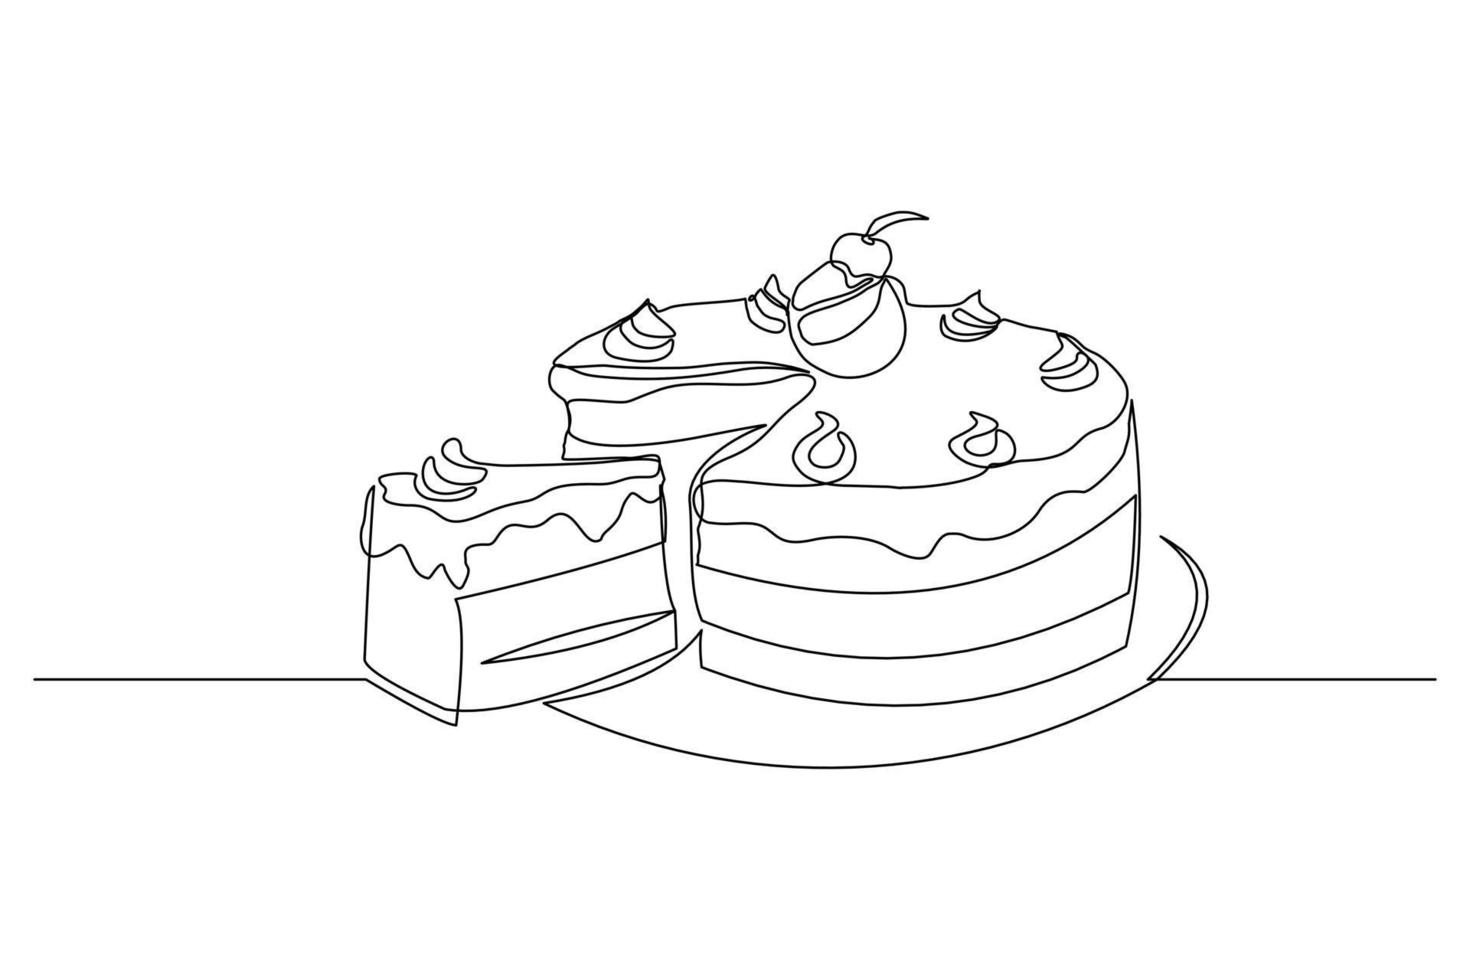 disegno a linea continua di una deliziosa torta a fette o budino. singolo pezzo d'arte di una linea di dessert cibo dolce. illustrazione vettoriale